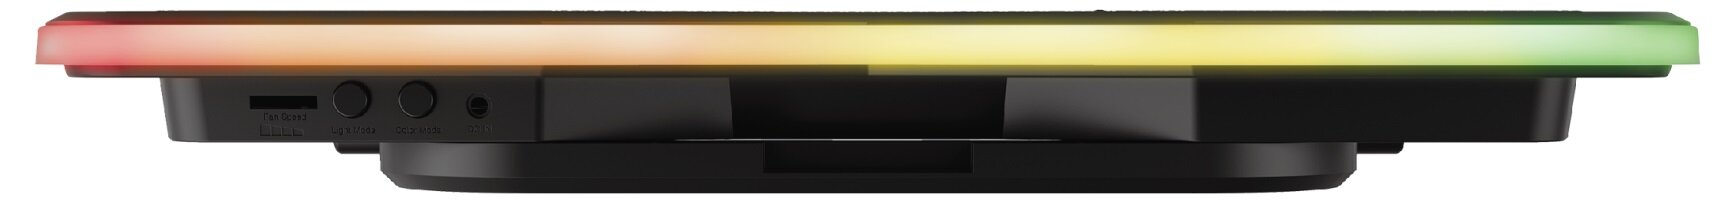 Podstawka chłodząca TRUST GXT Aura - Podświetlenie RGB